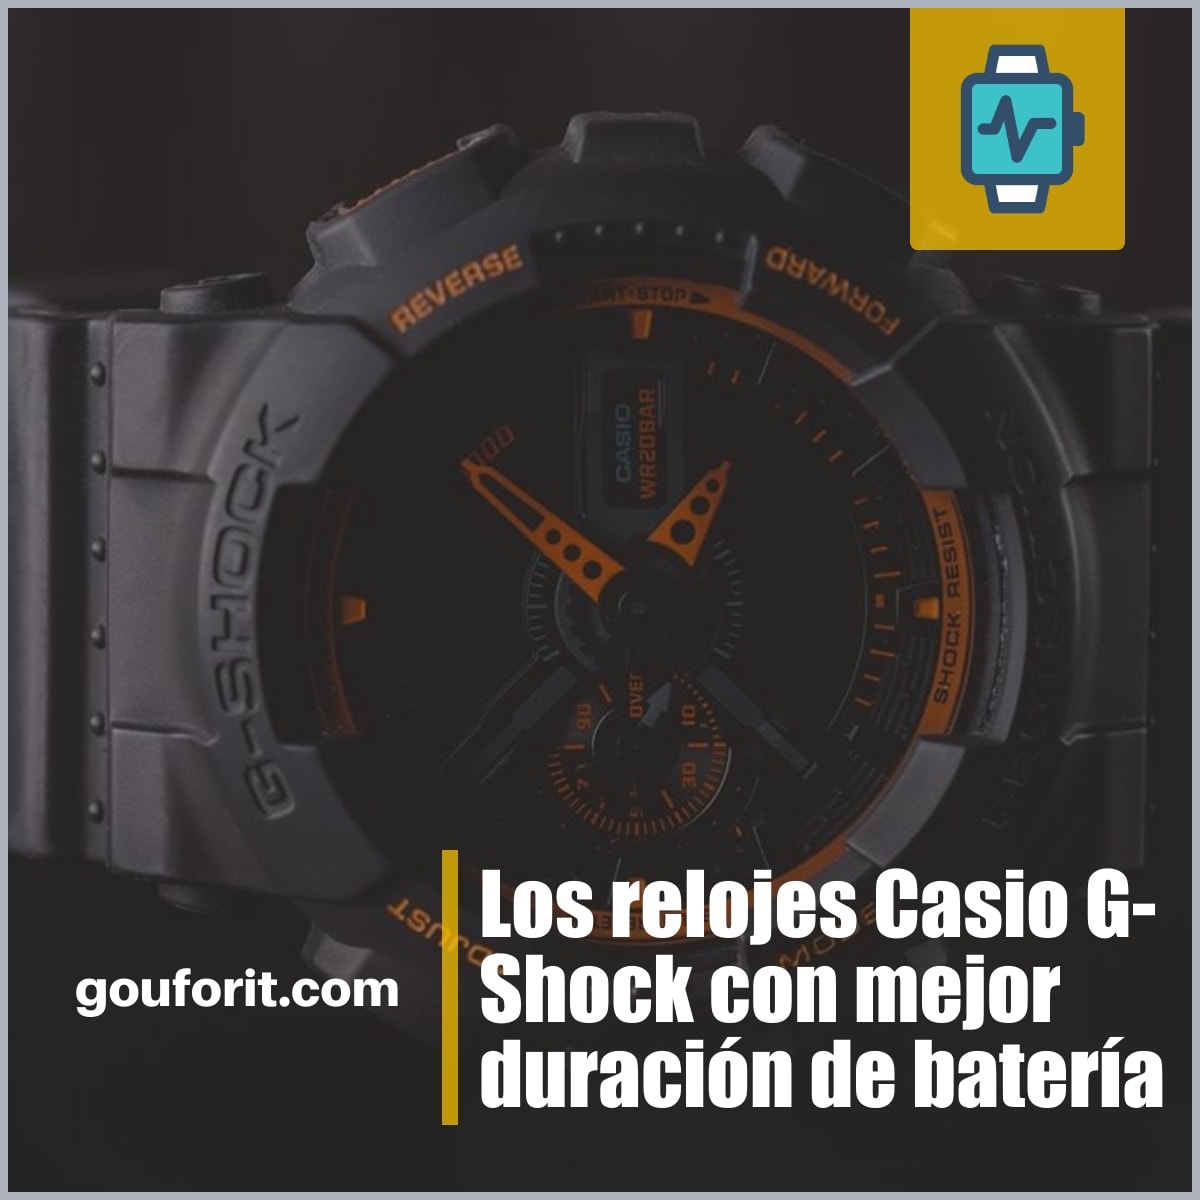 Los relojes Casio G-Shock con mejor duración de batería